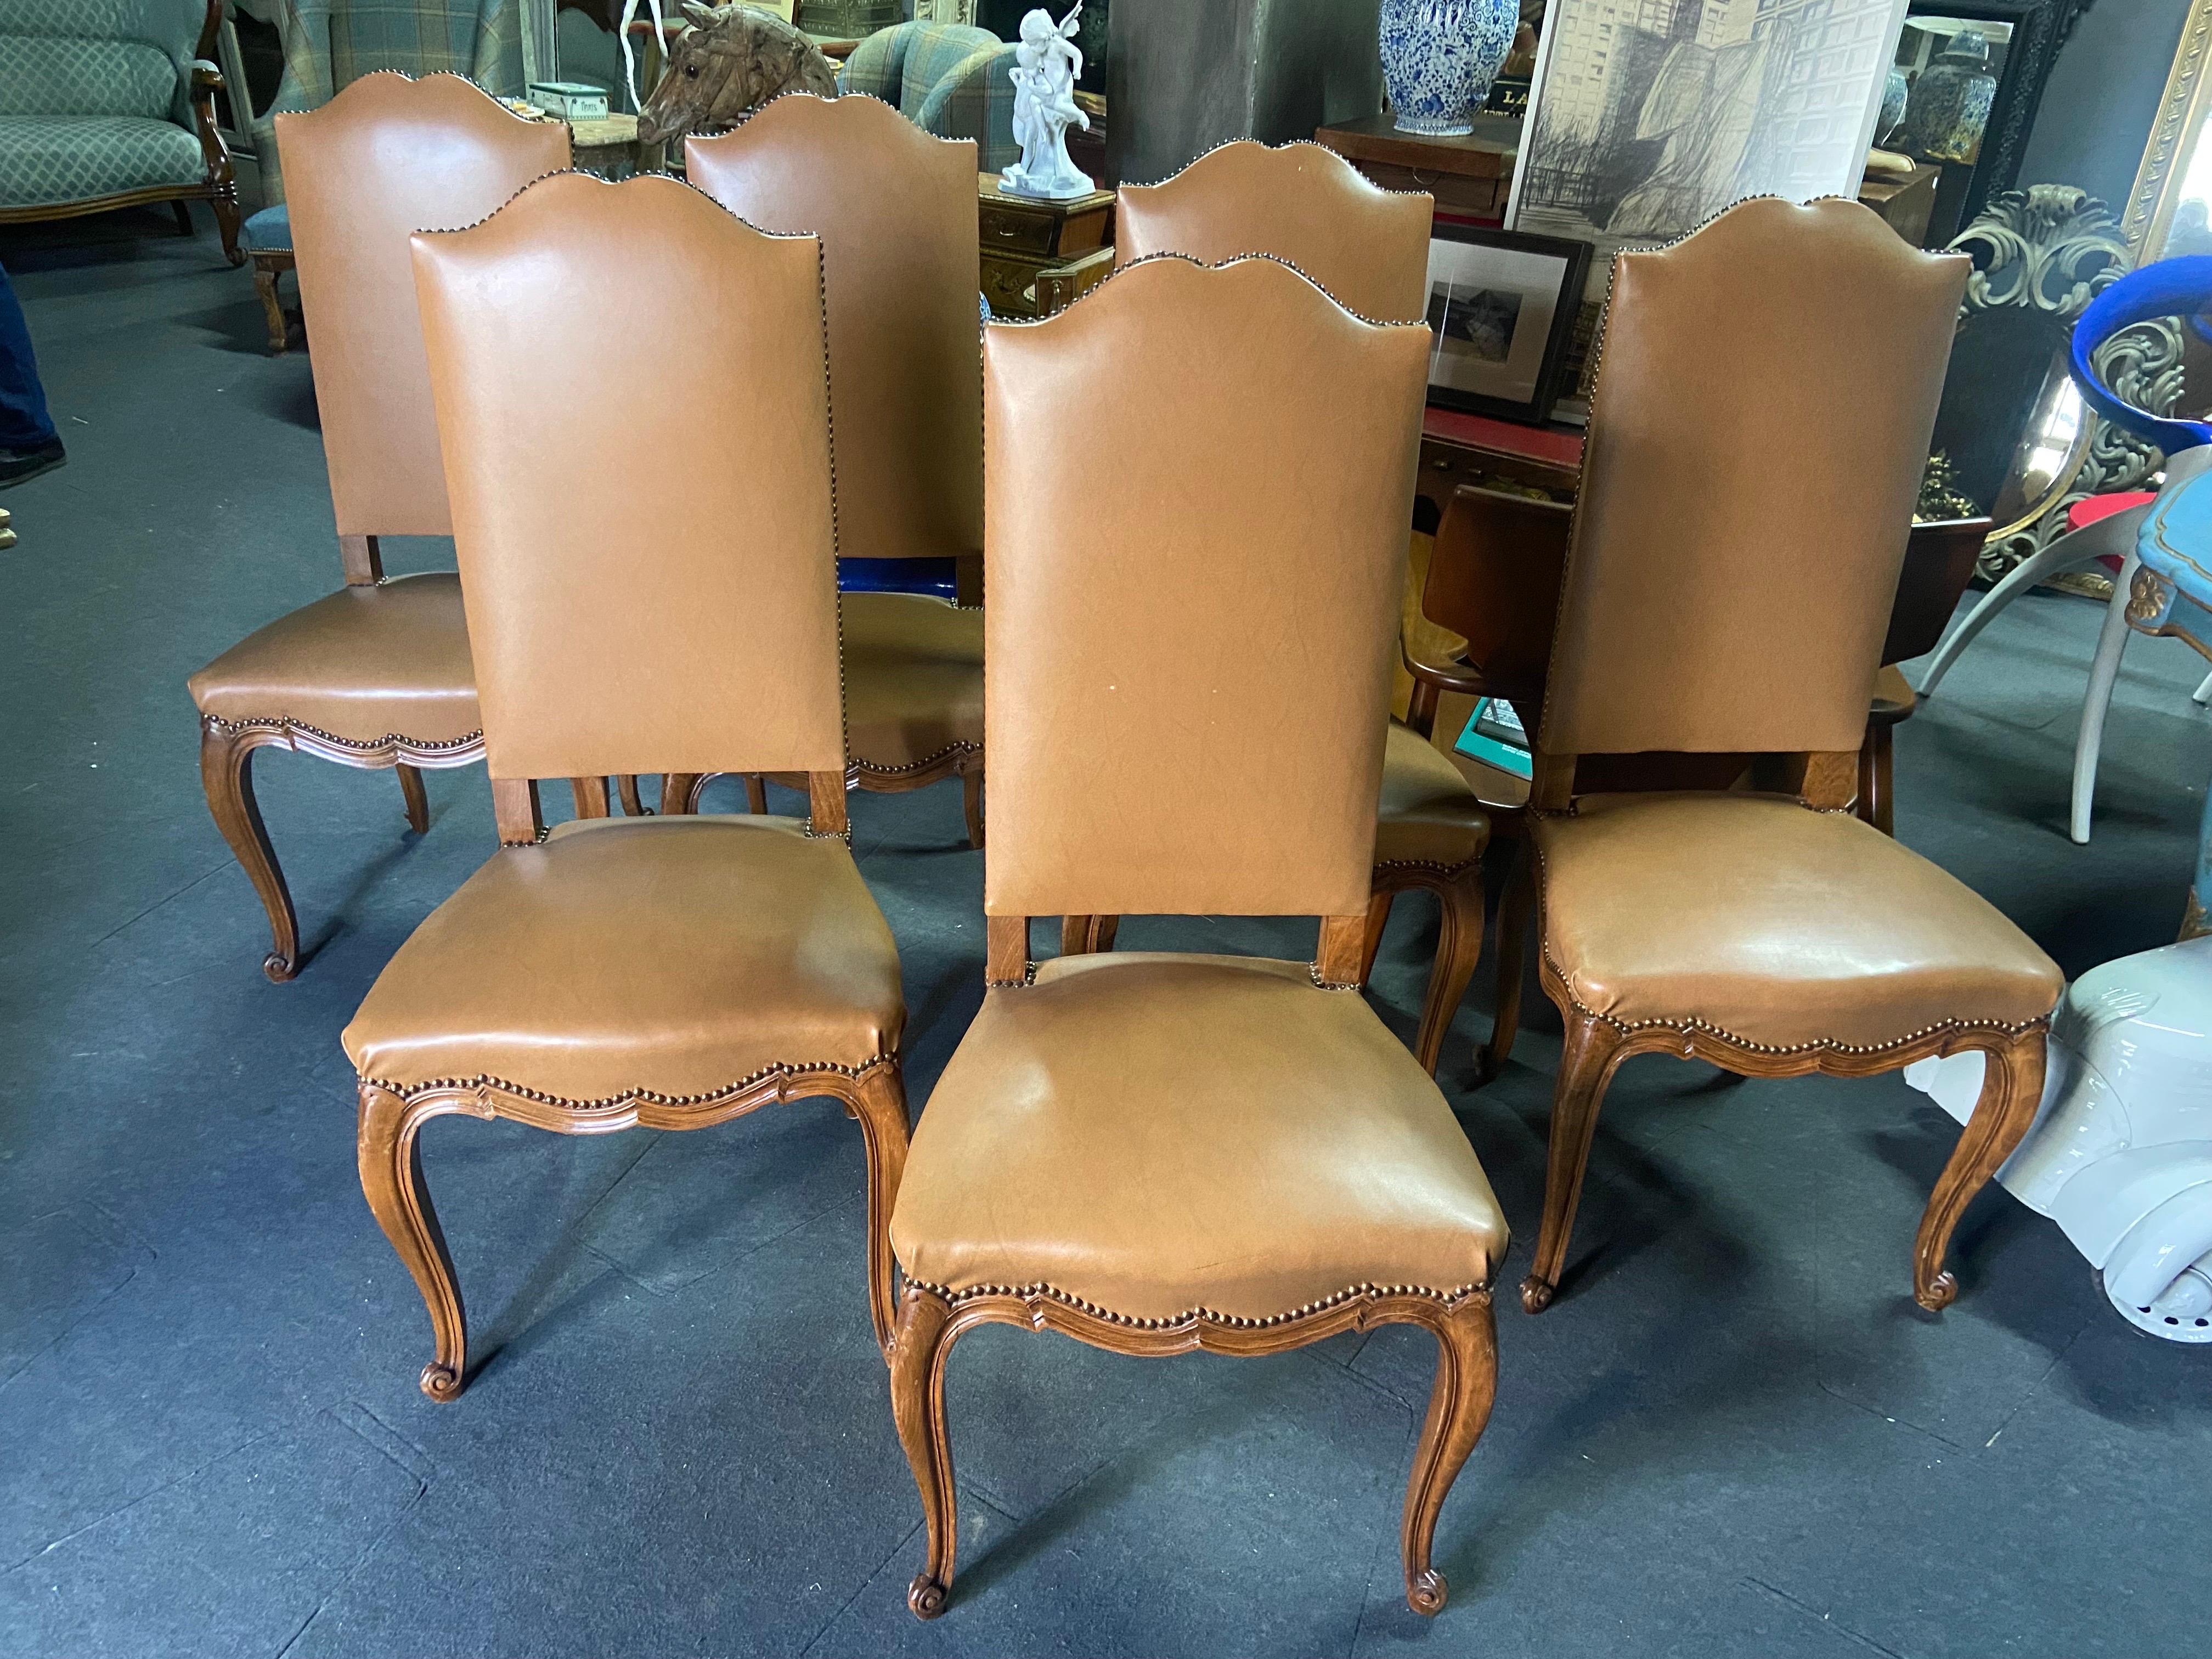 Sechs französische Esszimmerstühle im Stil von Louis XV, alle aus Nussbaumholz mit karamellfarbenem Lederbezug. Sehr hohe und bequeme Rückenlehnen. Sehr guter Zustand.
   